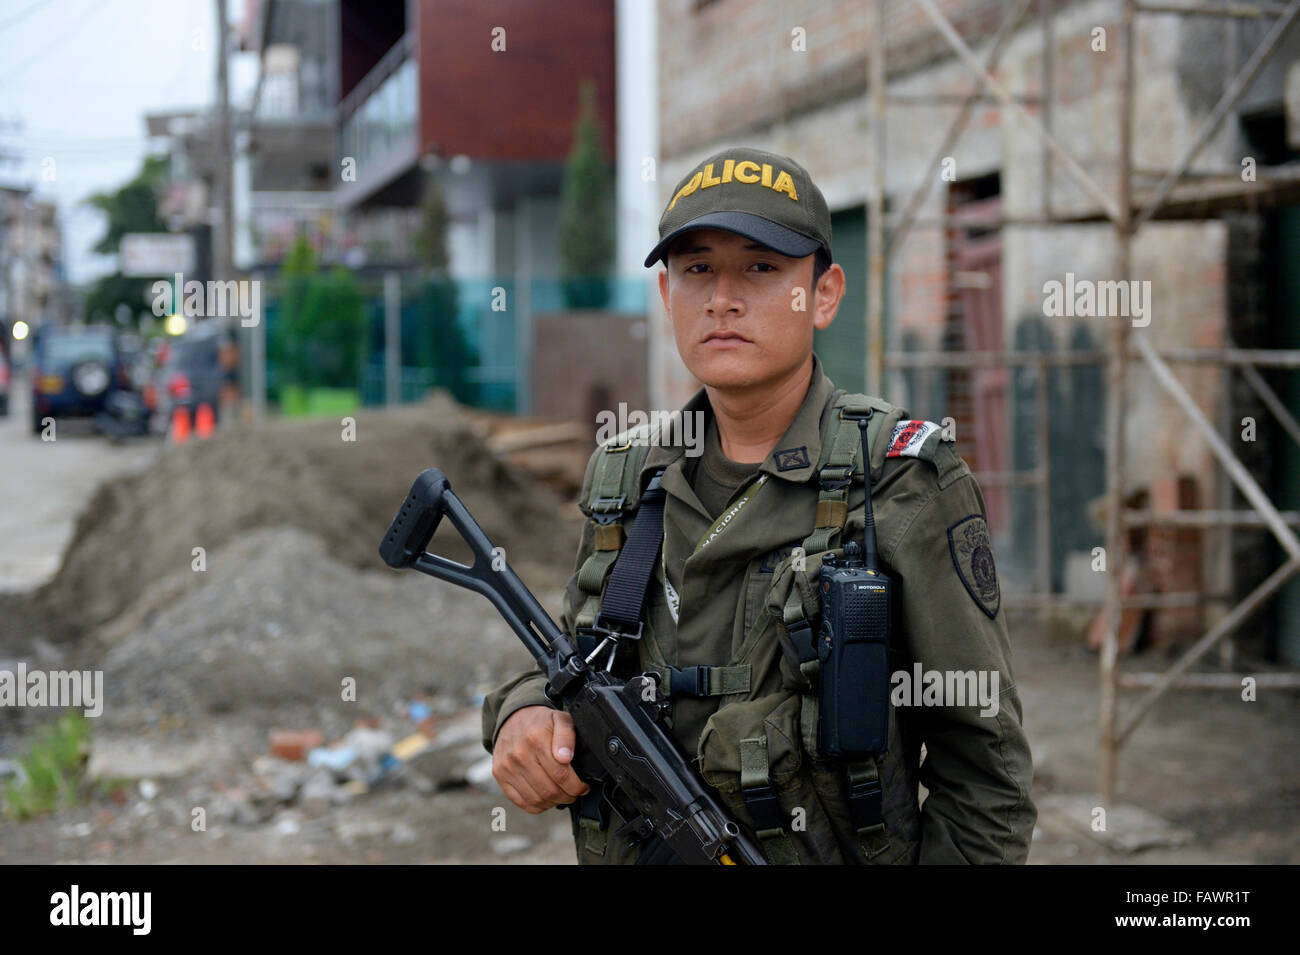 Jeune agent de police, lourdement armées, garde la route, à Quibdo, département de Chocó, Colombie Banque D'Images